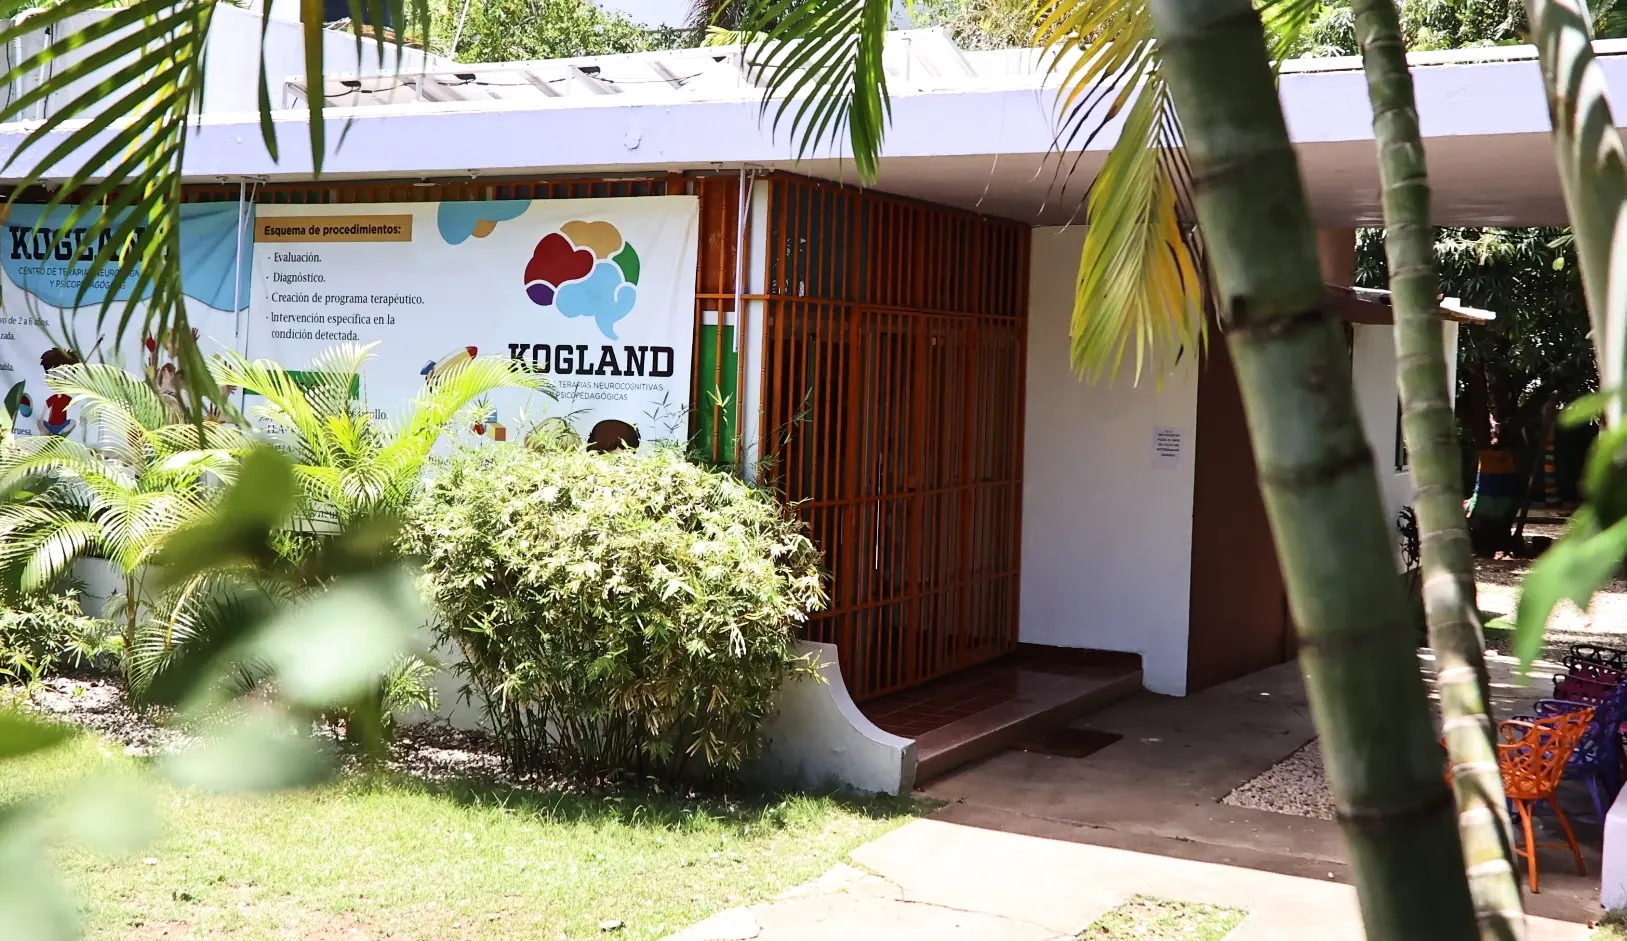 Autoridades disponen que niños de Kogland sean evaluados en Centro de Atención a la Diversidad